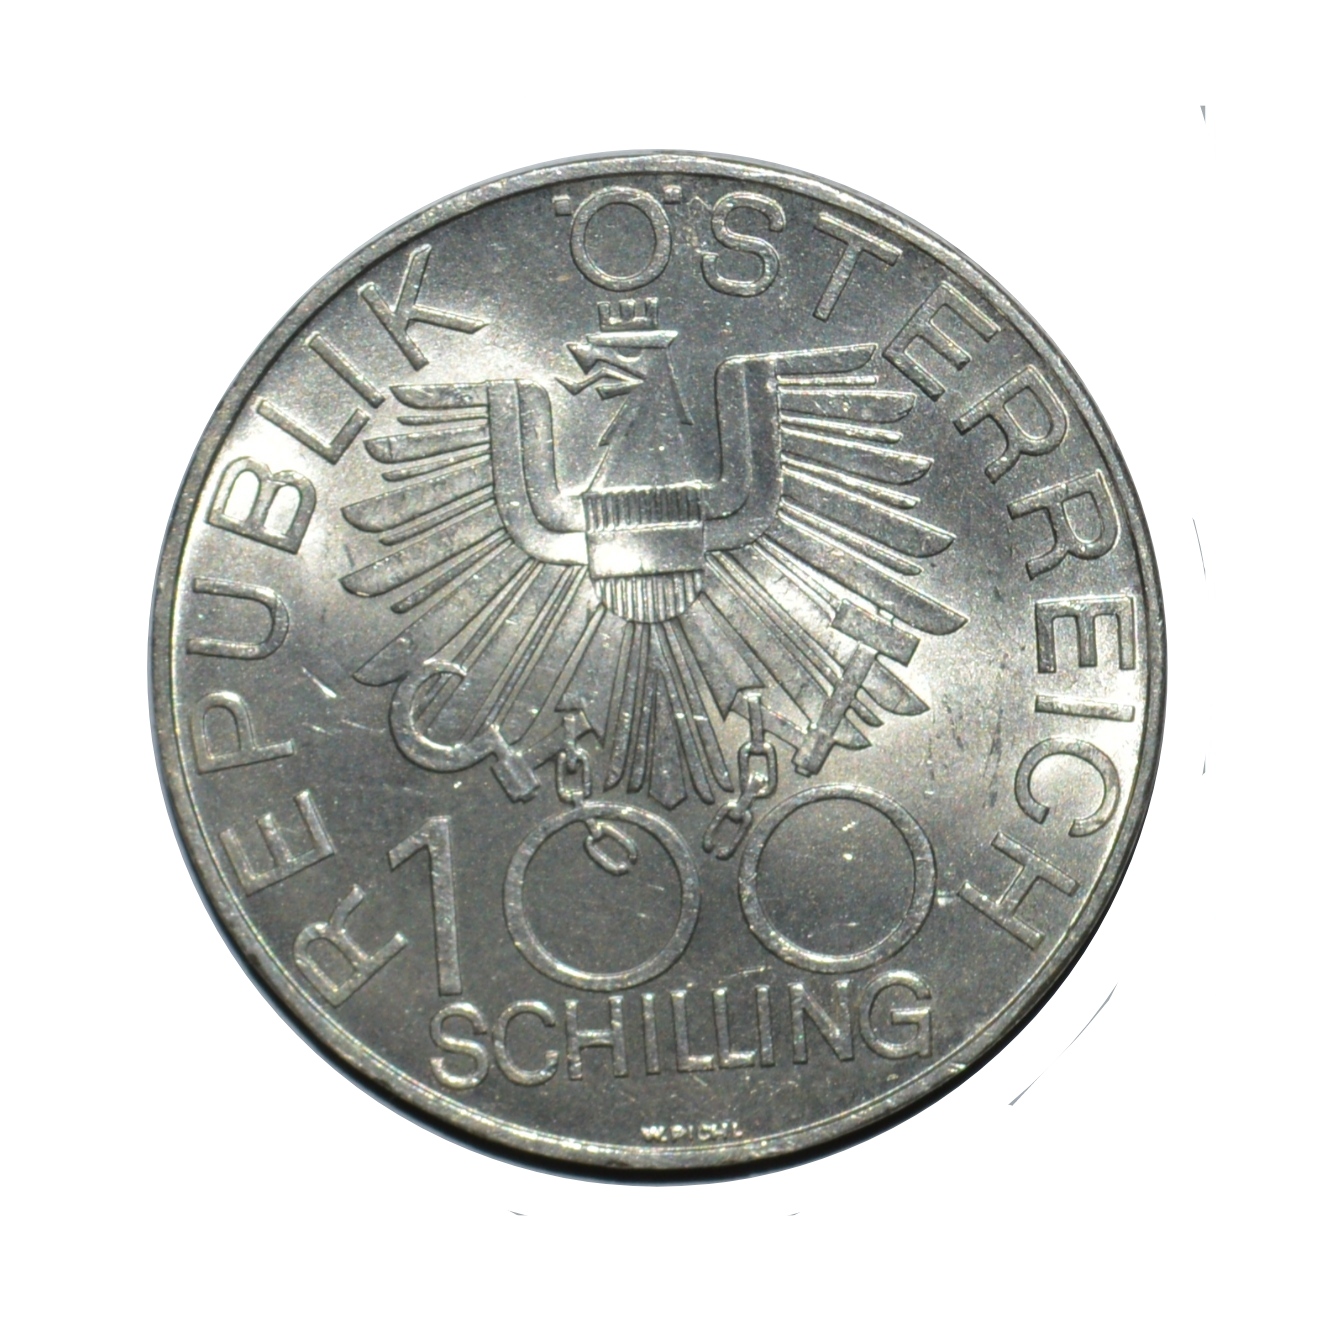 سکه تزیینی طرح کشور اتریش مدل 100 شیلینگ 1979 میلادی